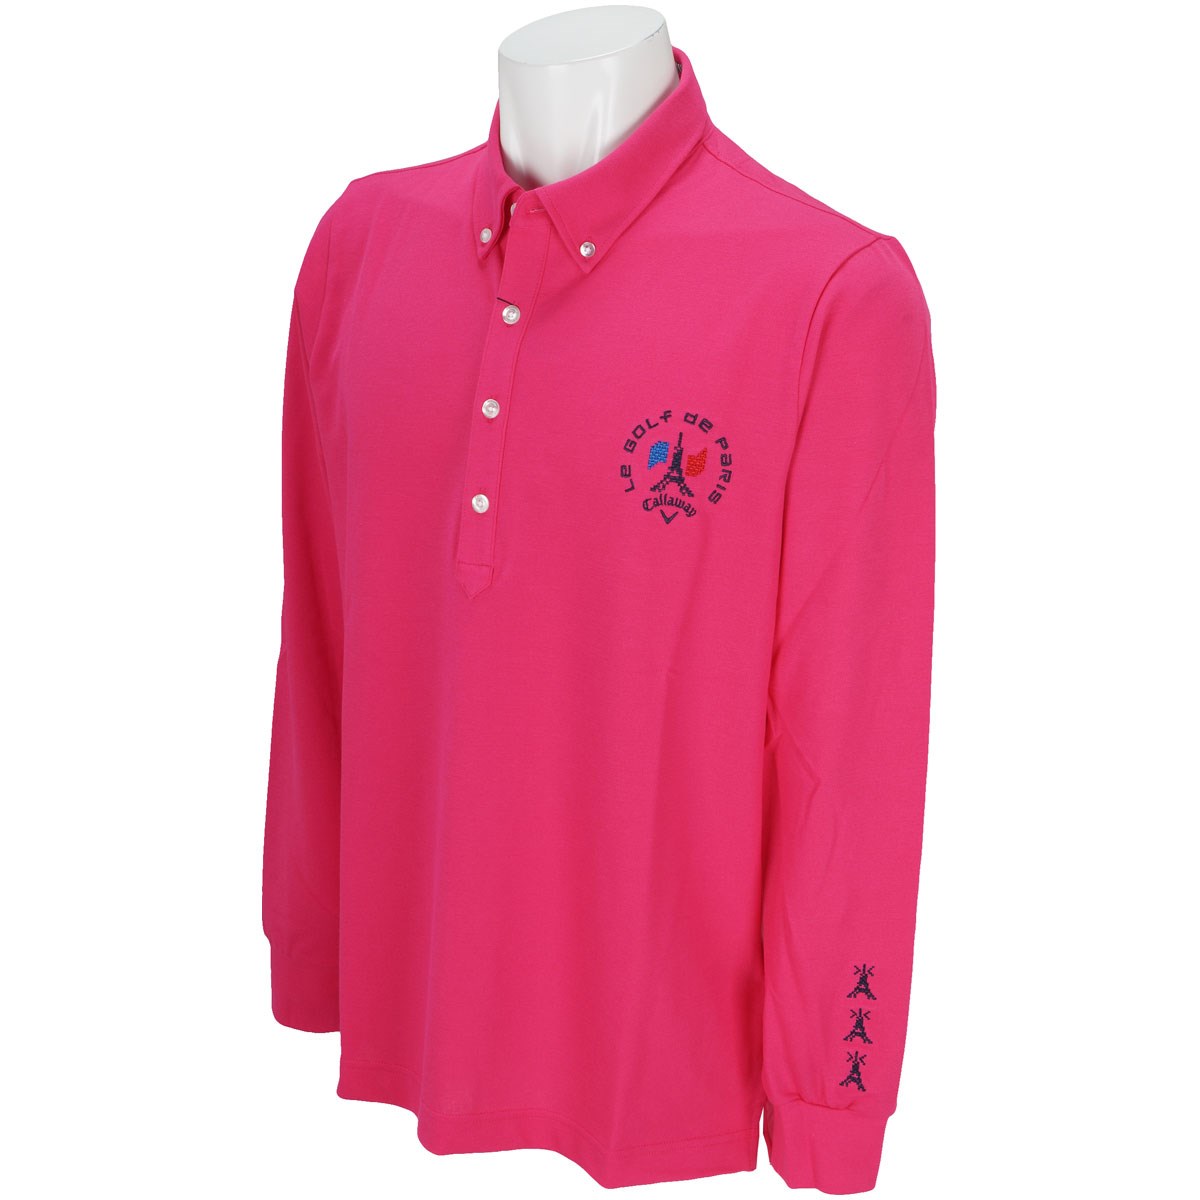 キャロウェイゴルフ(Callaway Golf) ストレッチ ファイン鹿の子ボタンダウンカラー長袖ポロシャツ 